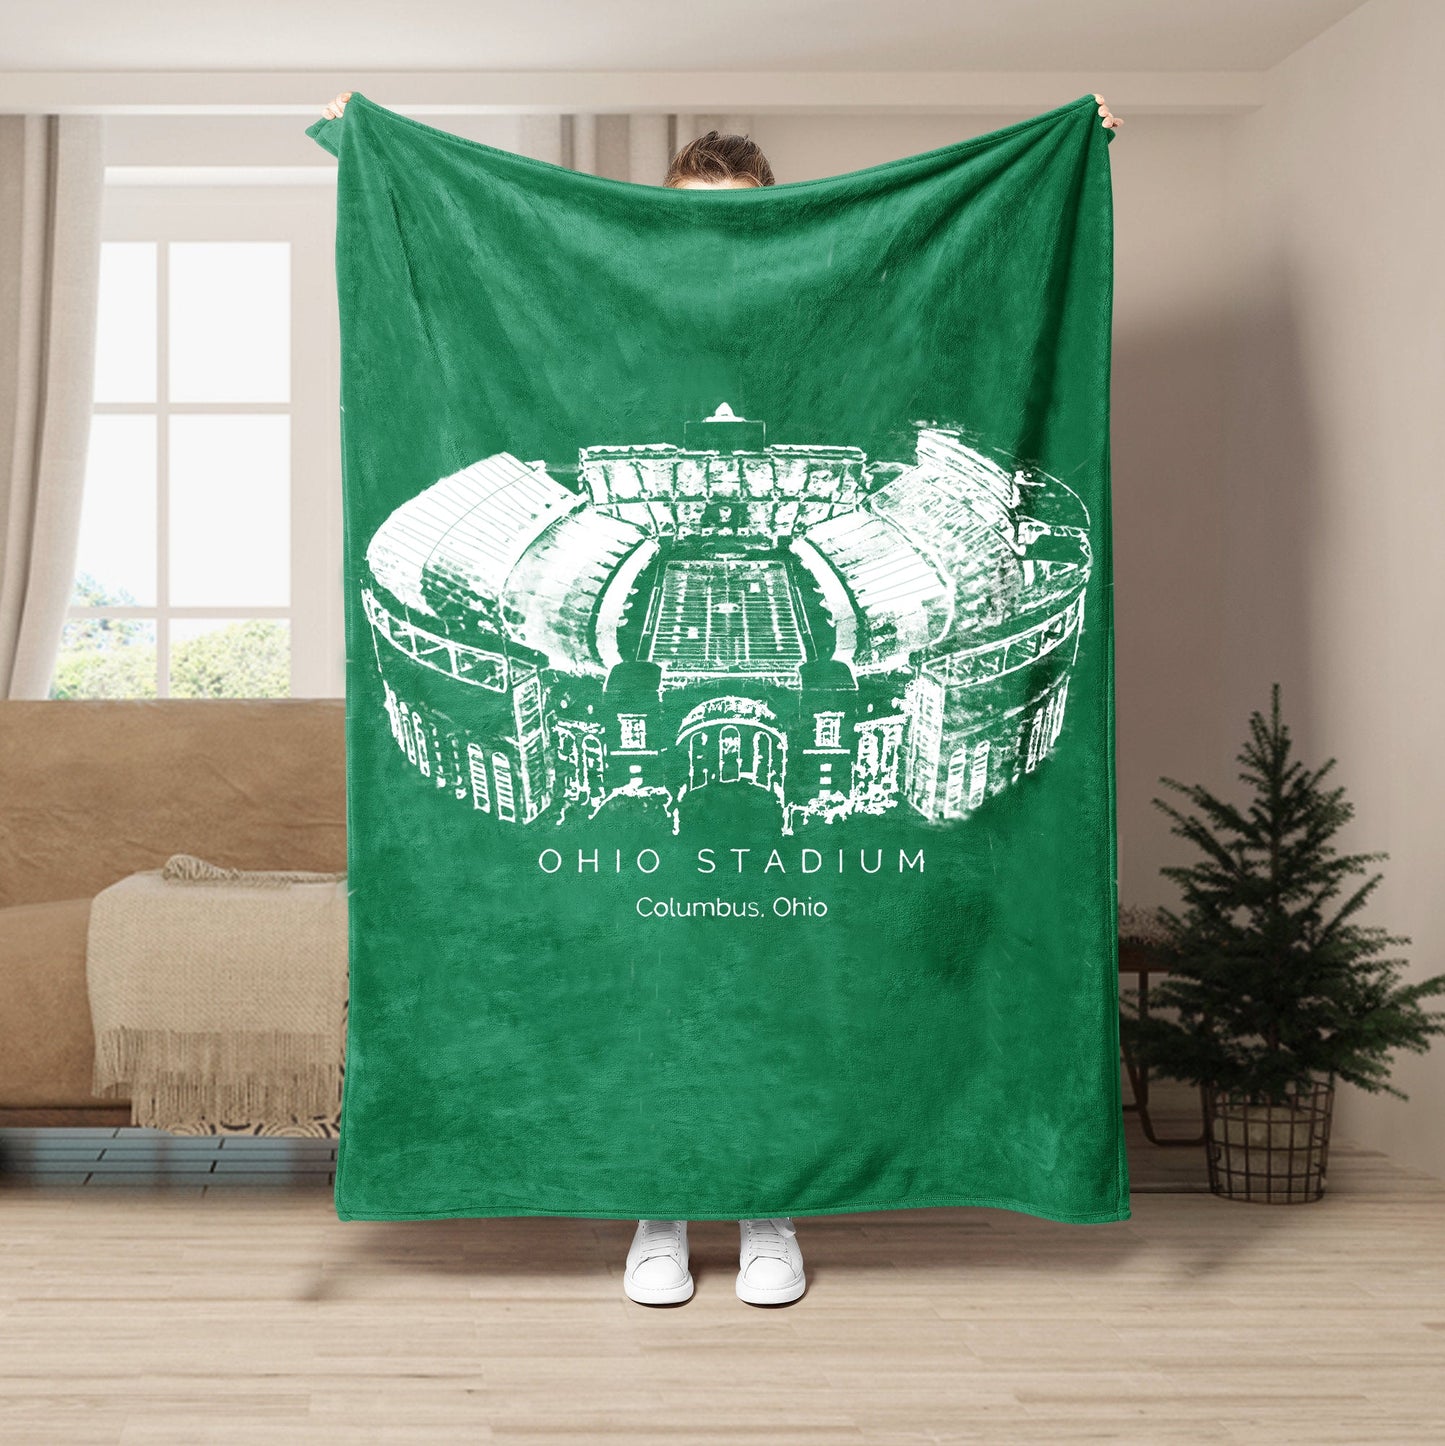 Ohio Stadium - Ohio State Buckeyes football, College Football Blanket